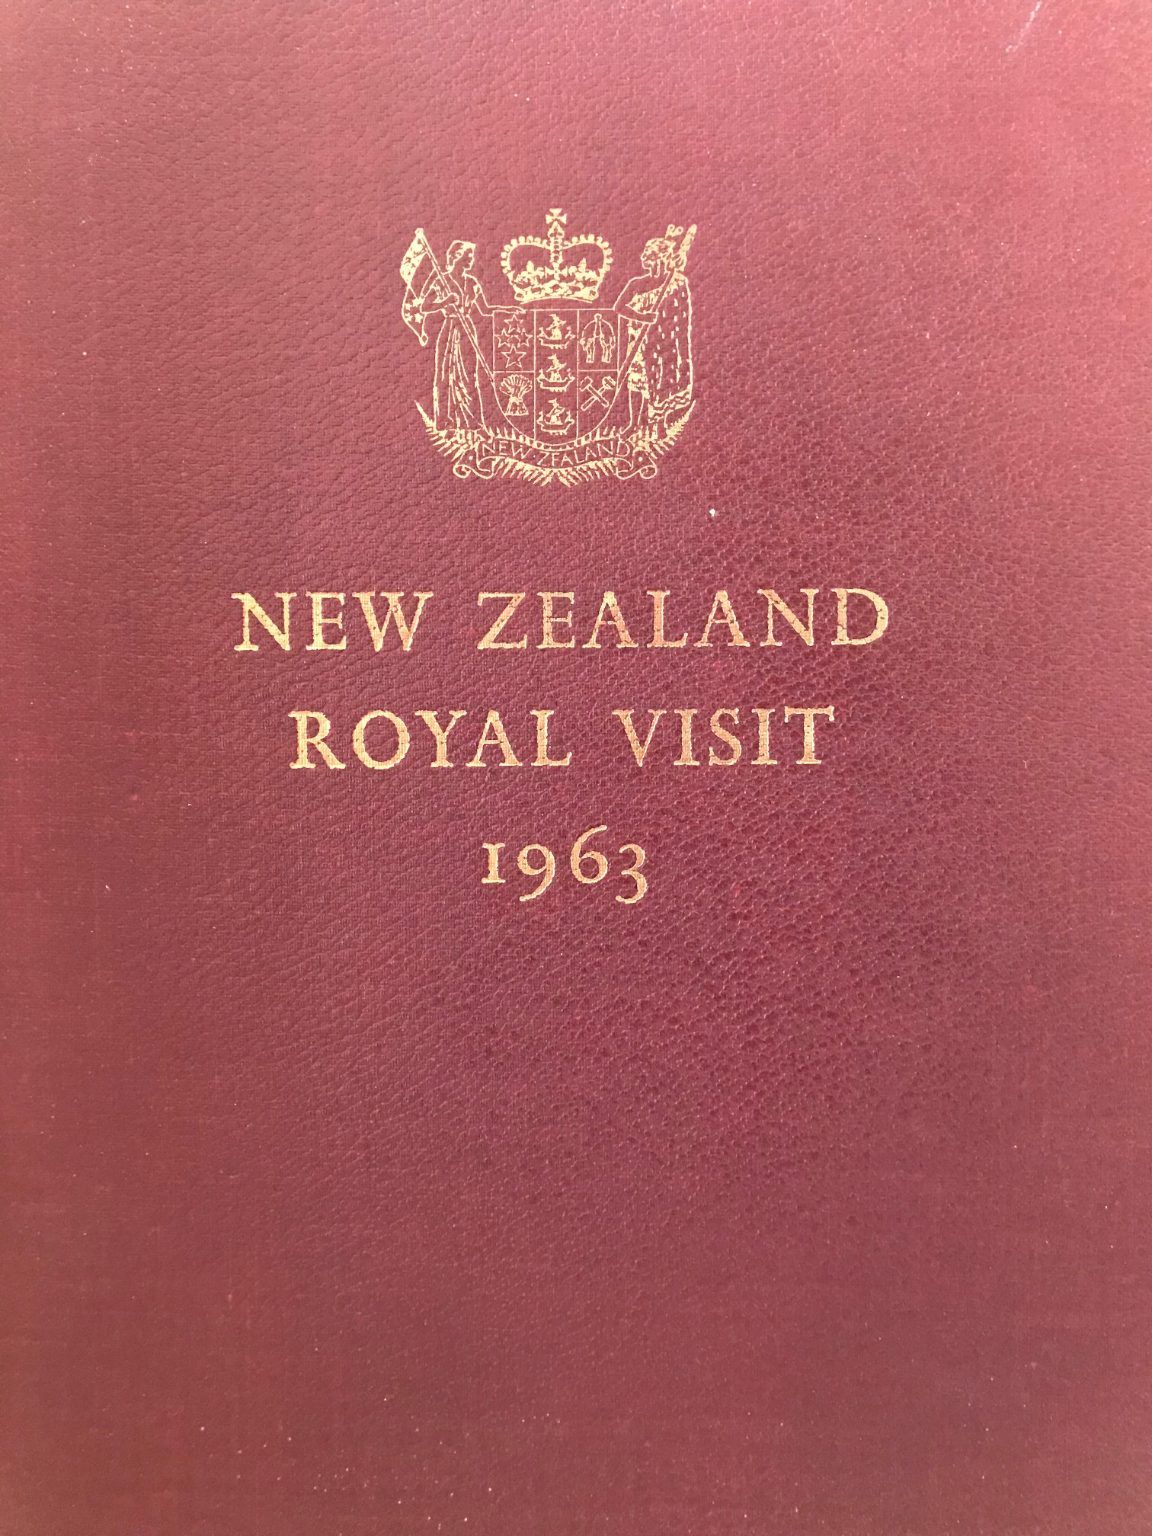 NEW ZEALAND ROYAL VISIT 1963